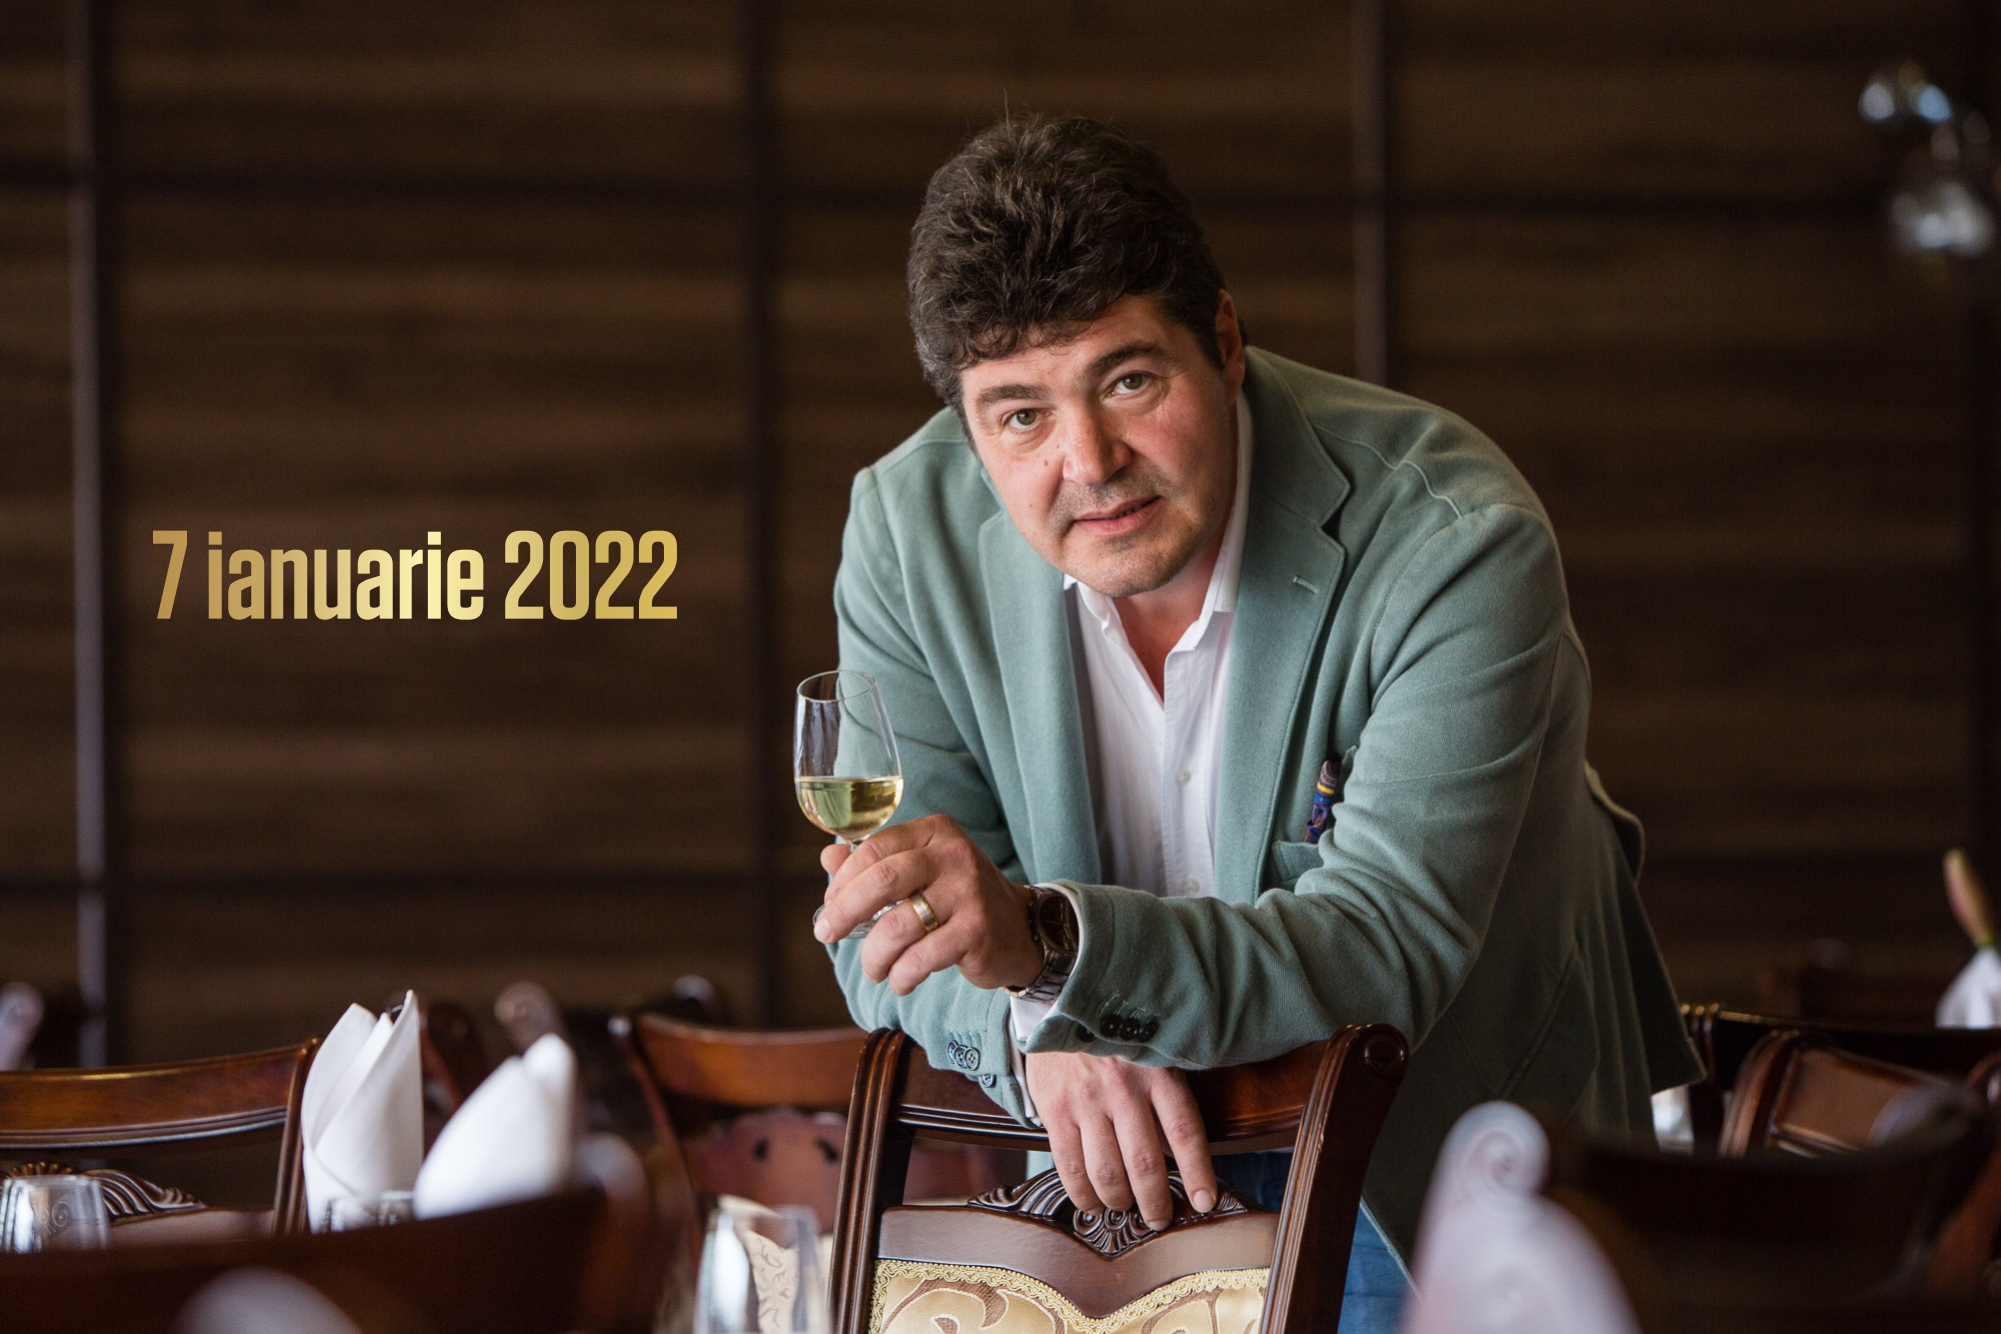 07 ianuarie 2022 – Pahare noi, vă rog! Începem degustarea. Recomandările lui Cătălin PĂDURARU – VINARIUM